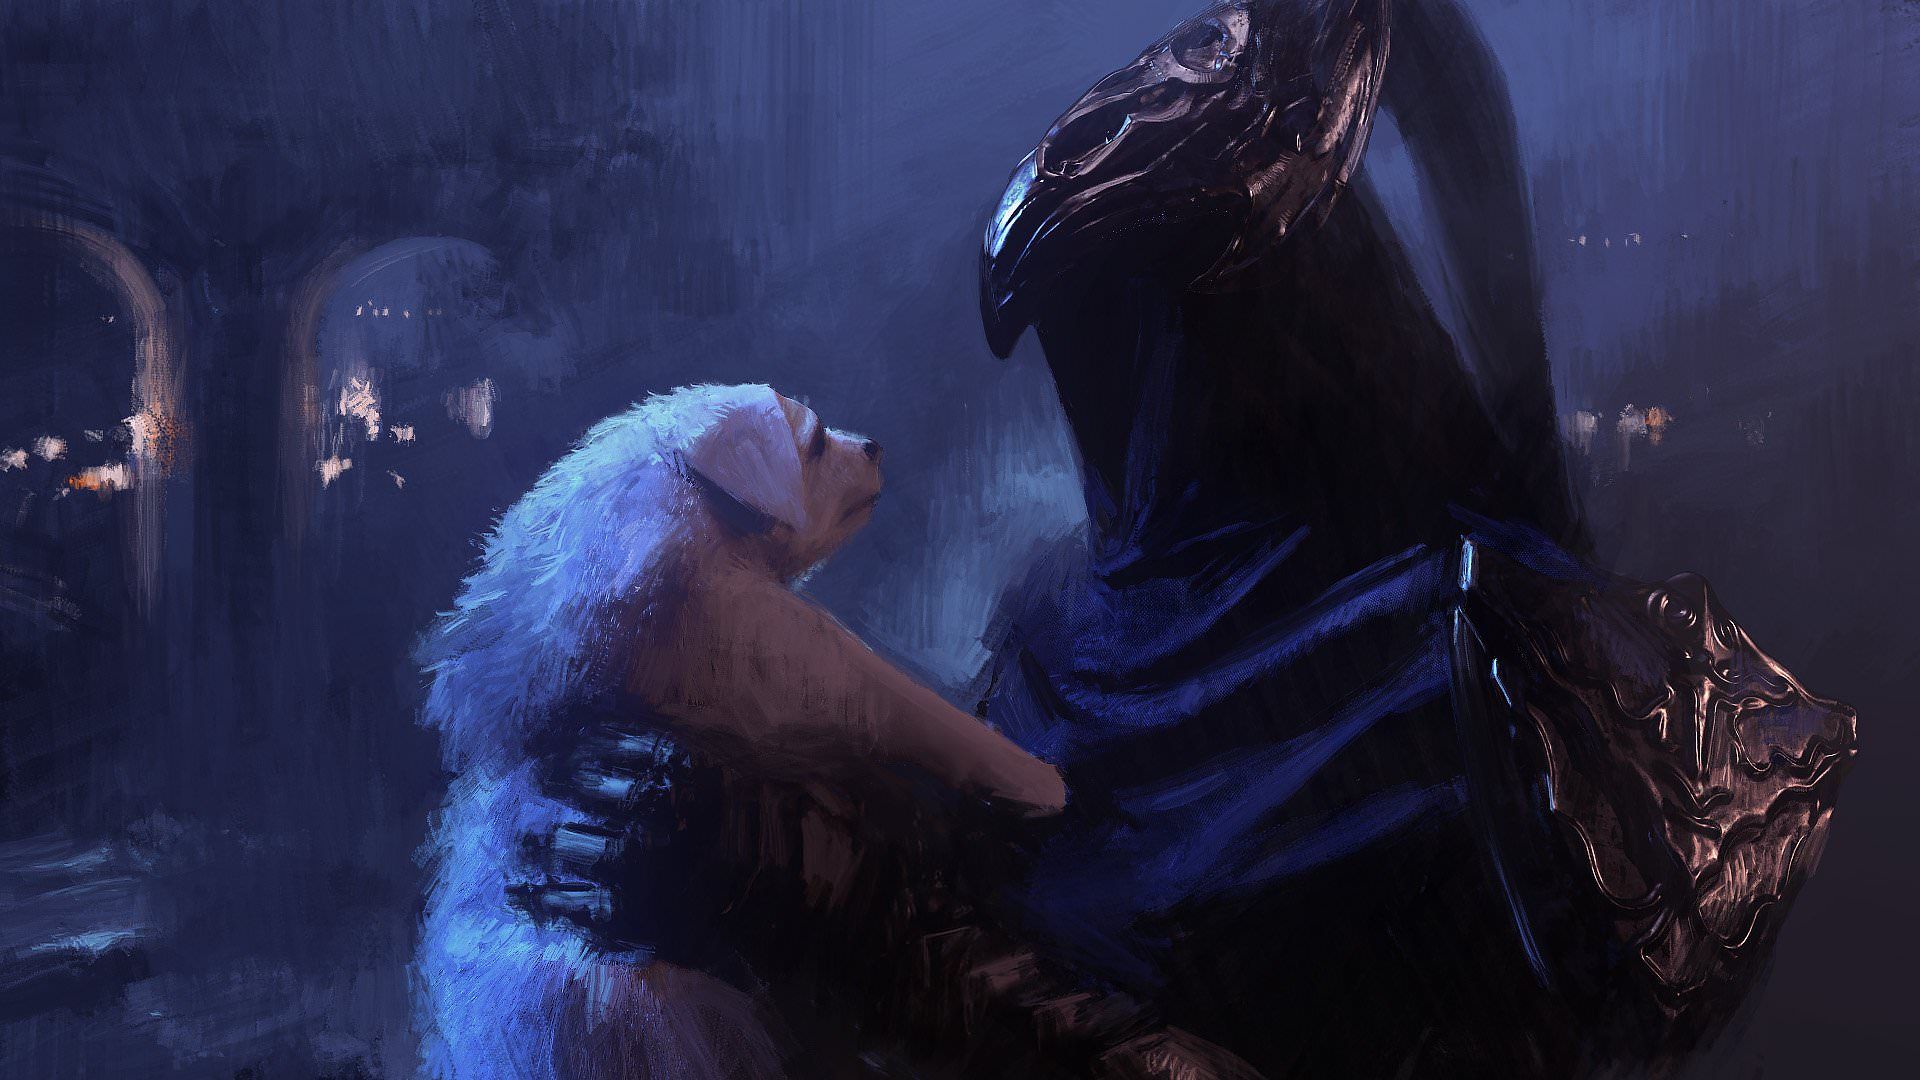 Dark Souls Artorias Art , HD Wallpaper & Backgrounds